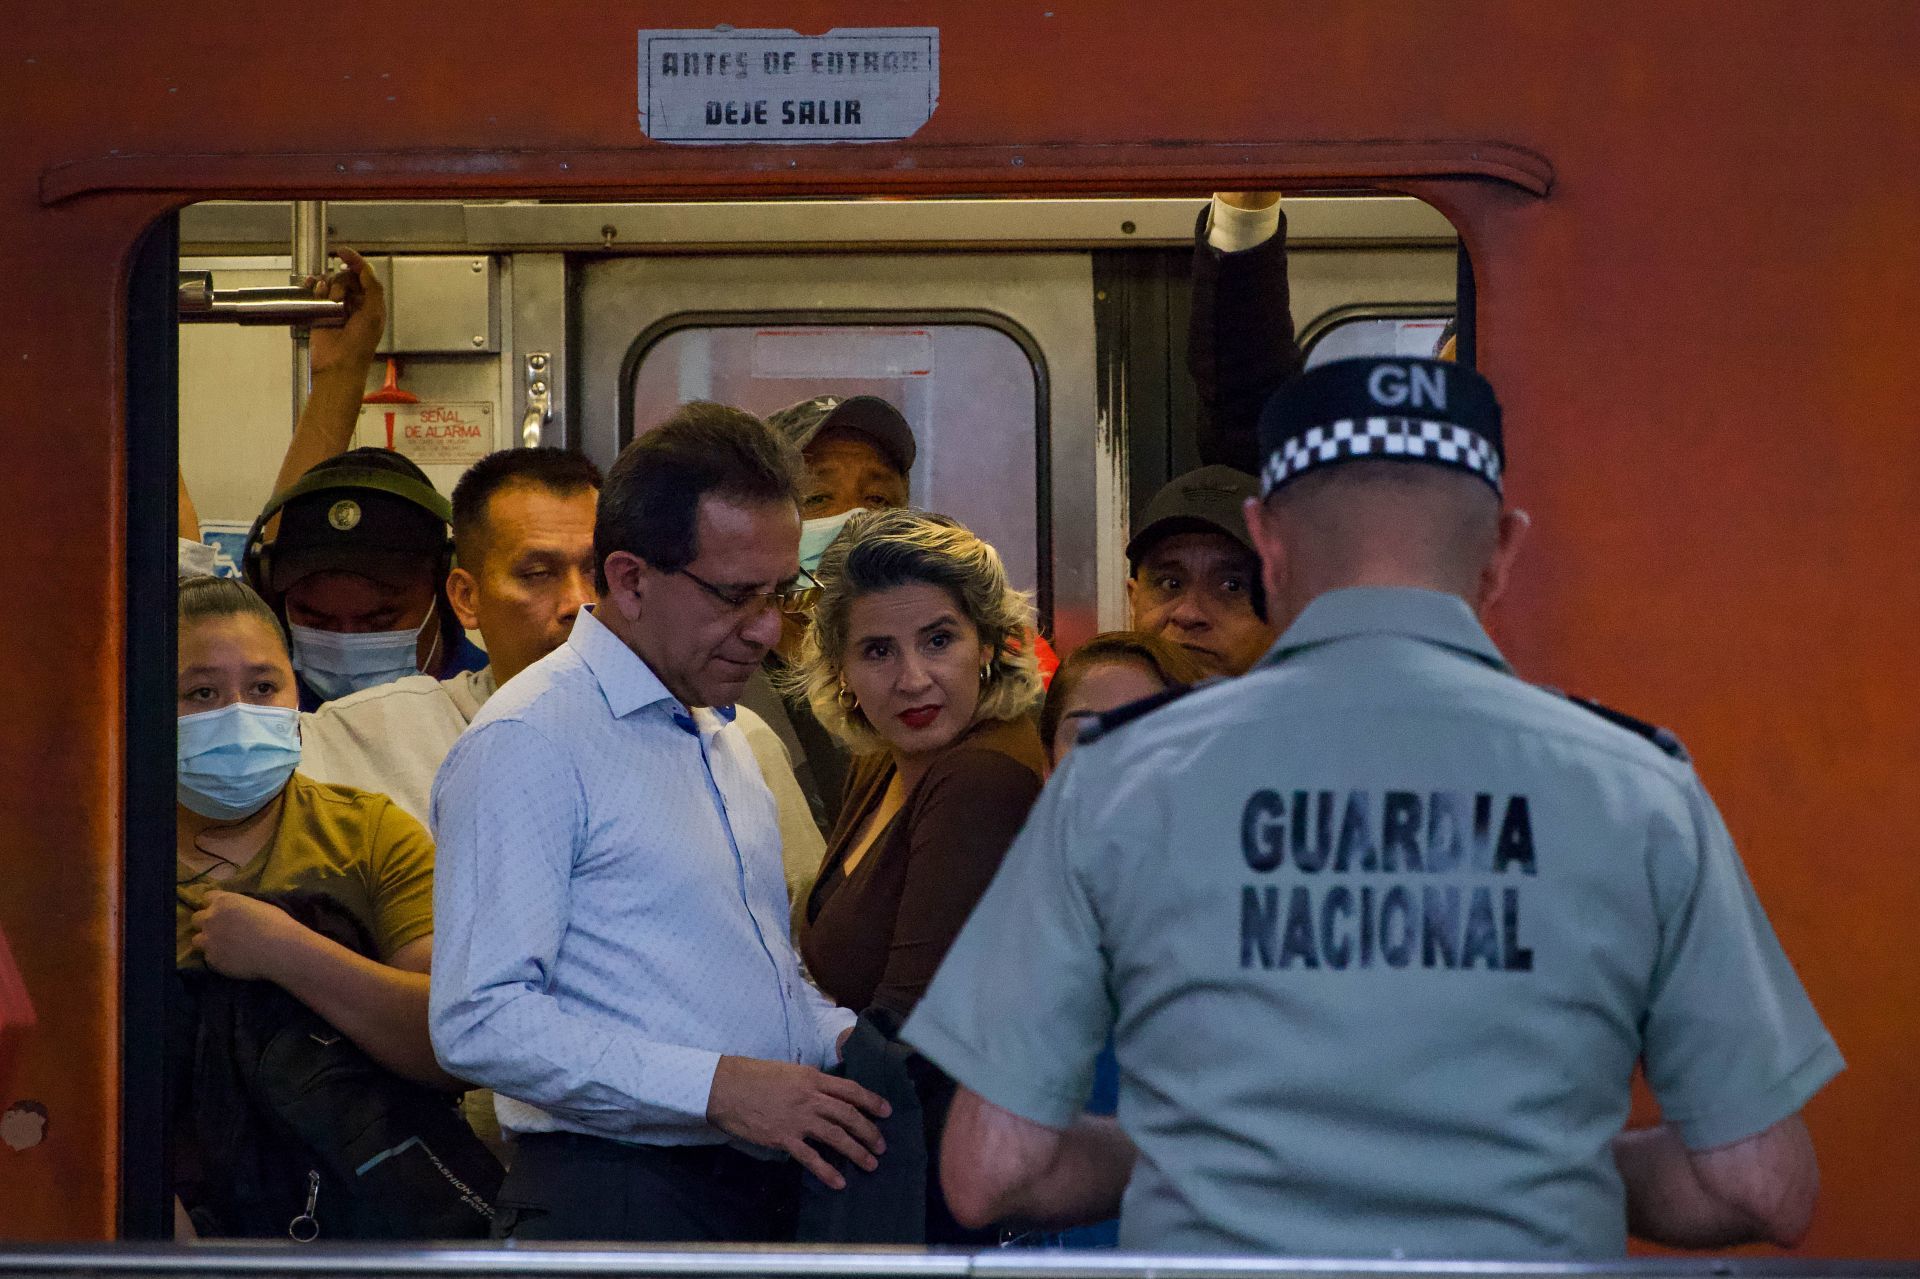 Elementos de la GN arribaron al Metro ante las "anomalías", informó la jefa de Gobierno (CUARTOSCURO.COM)